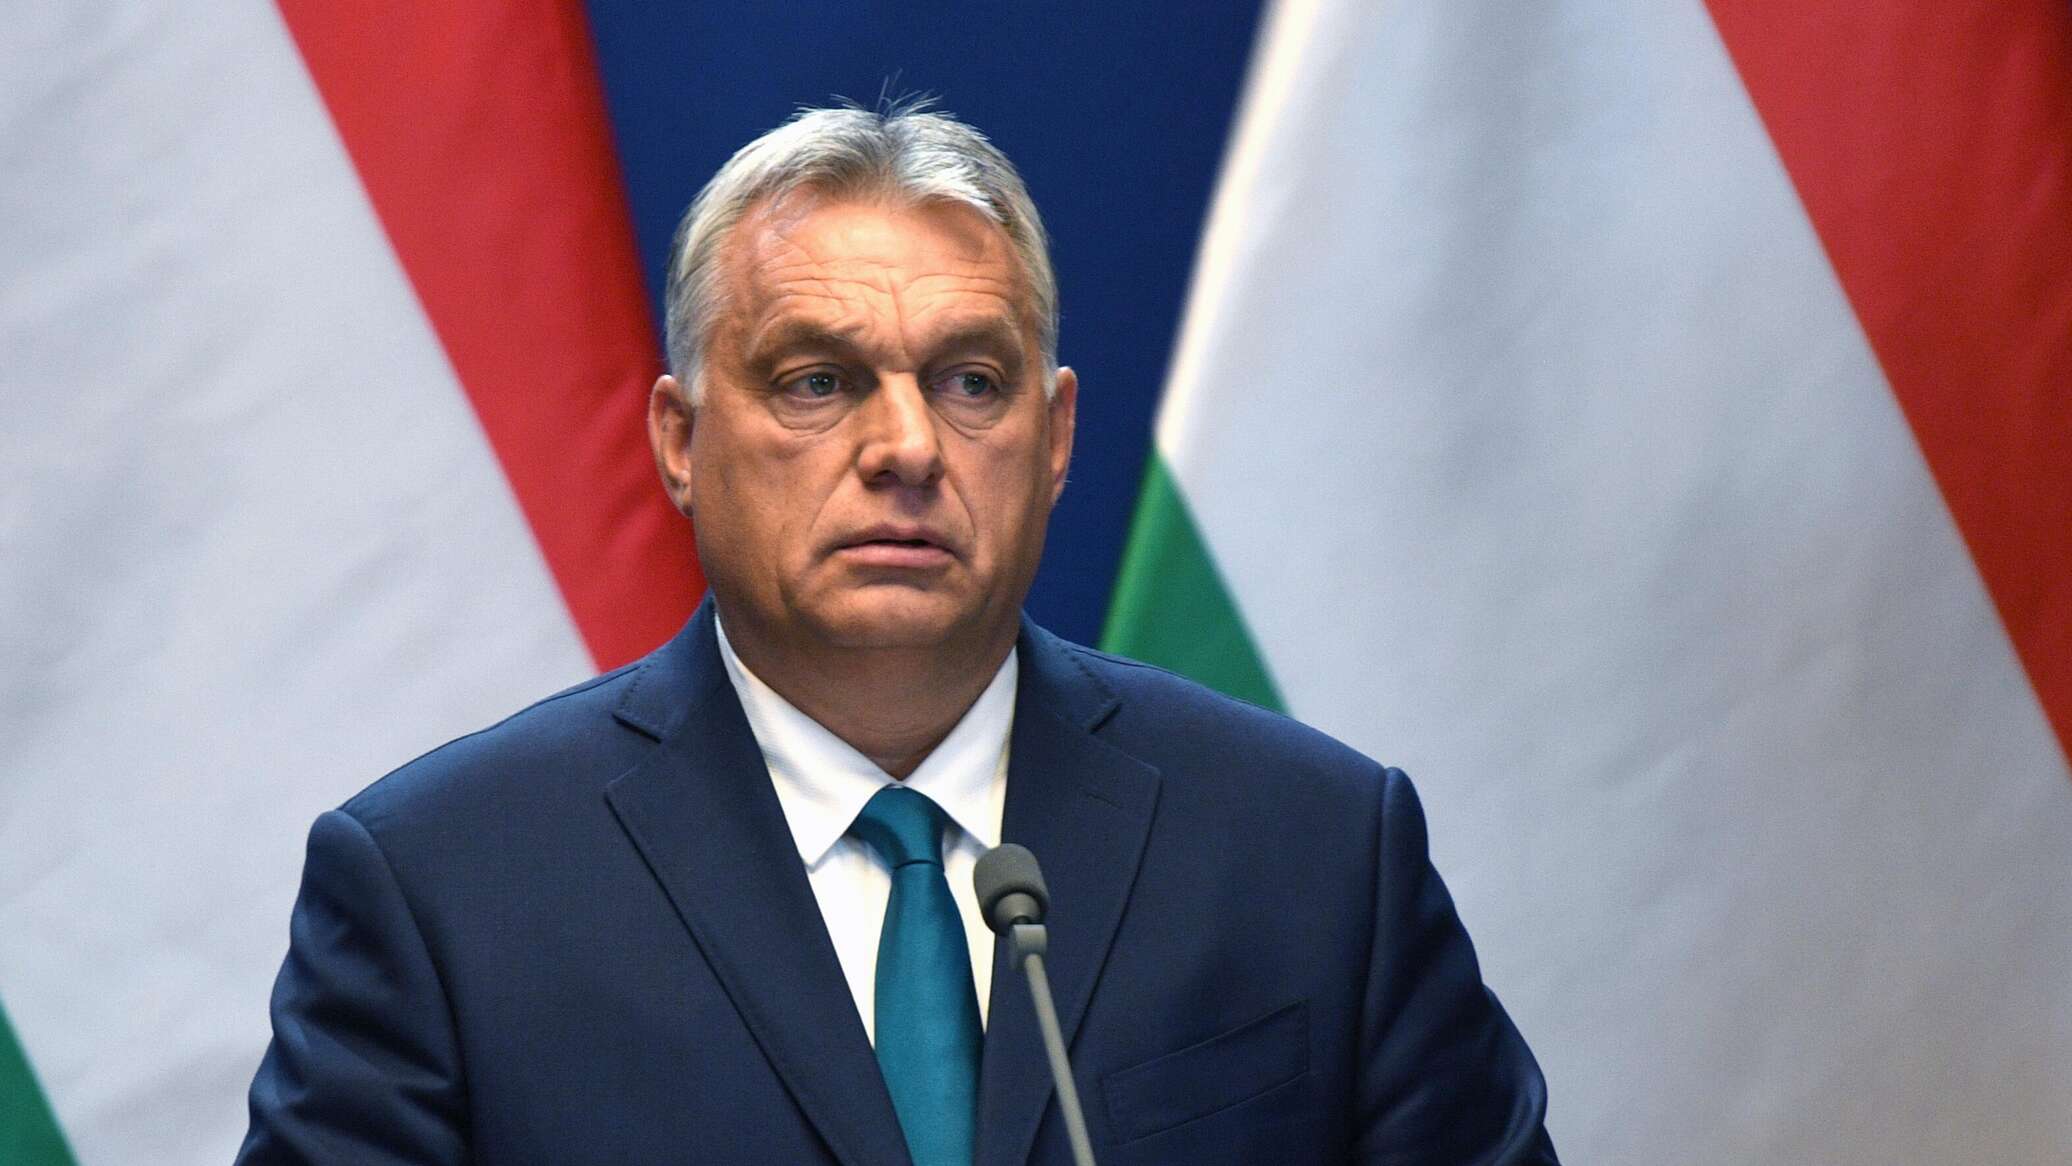 المجر: سياسة بروكسل الحالية هي "دق المسمار الأخير في نعش" الاتحاد الأوروبي